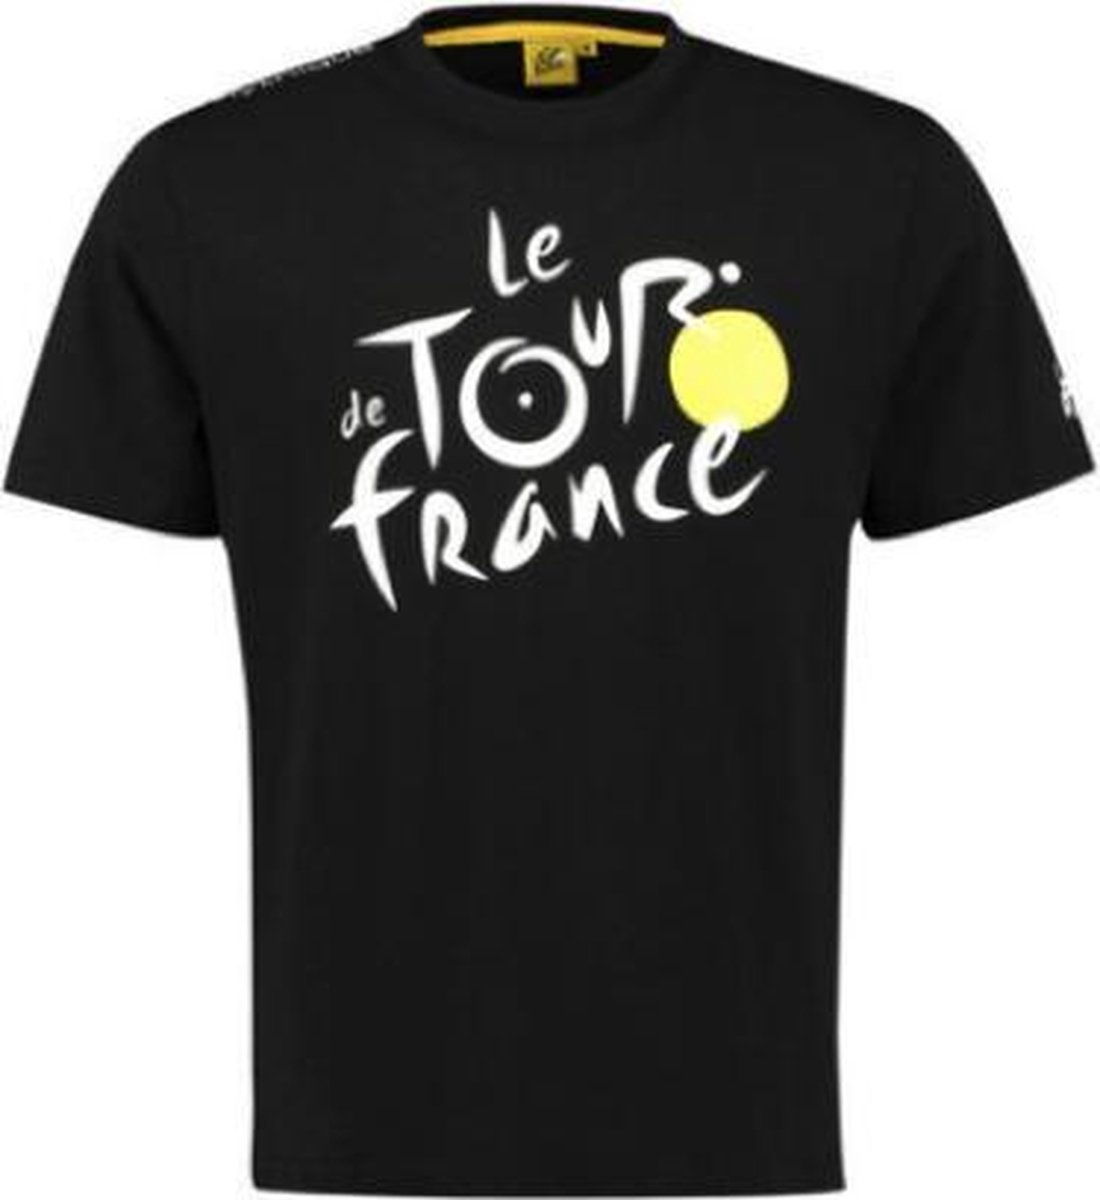 Tour de France - Officiële T-shirt - Zwart - Maat M